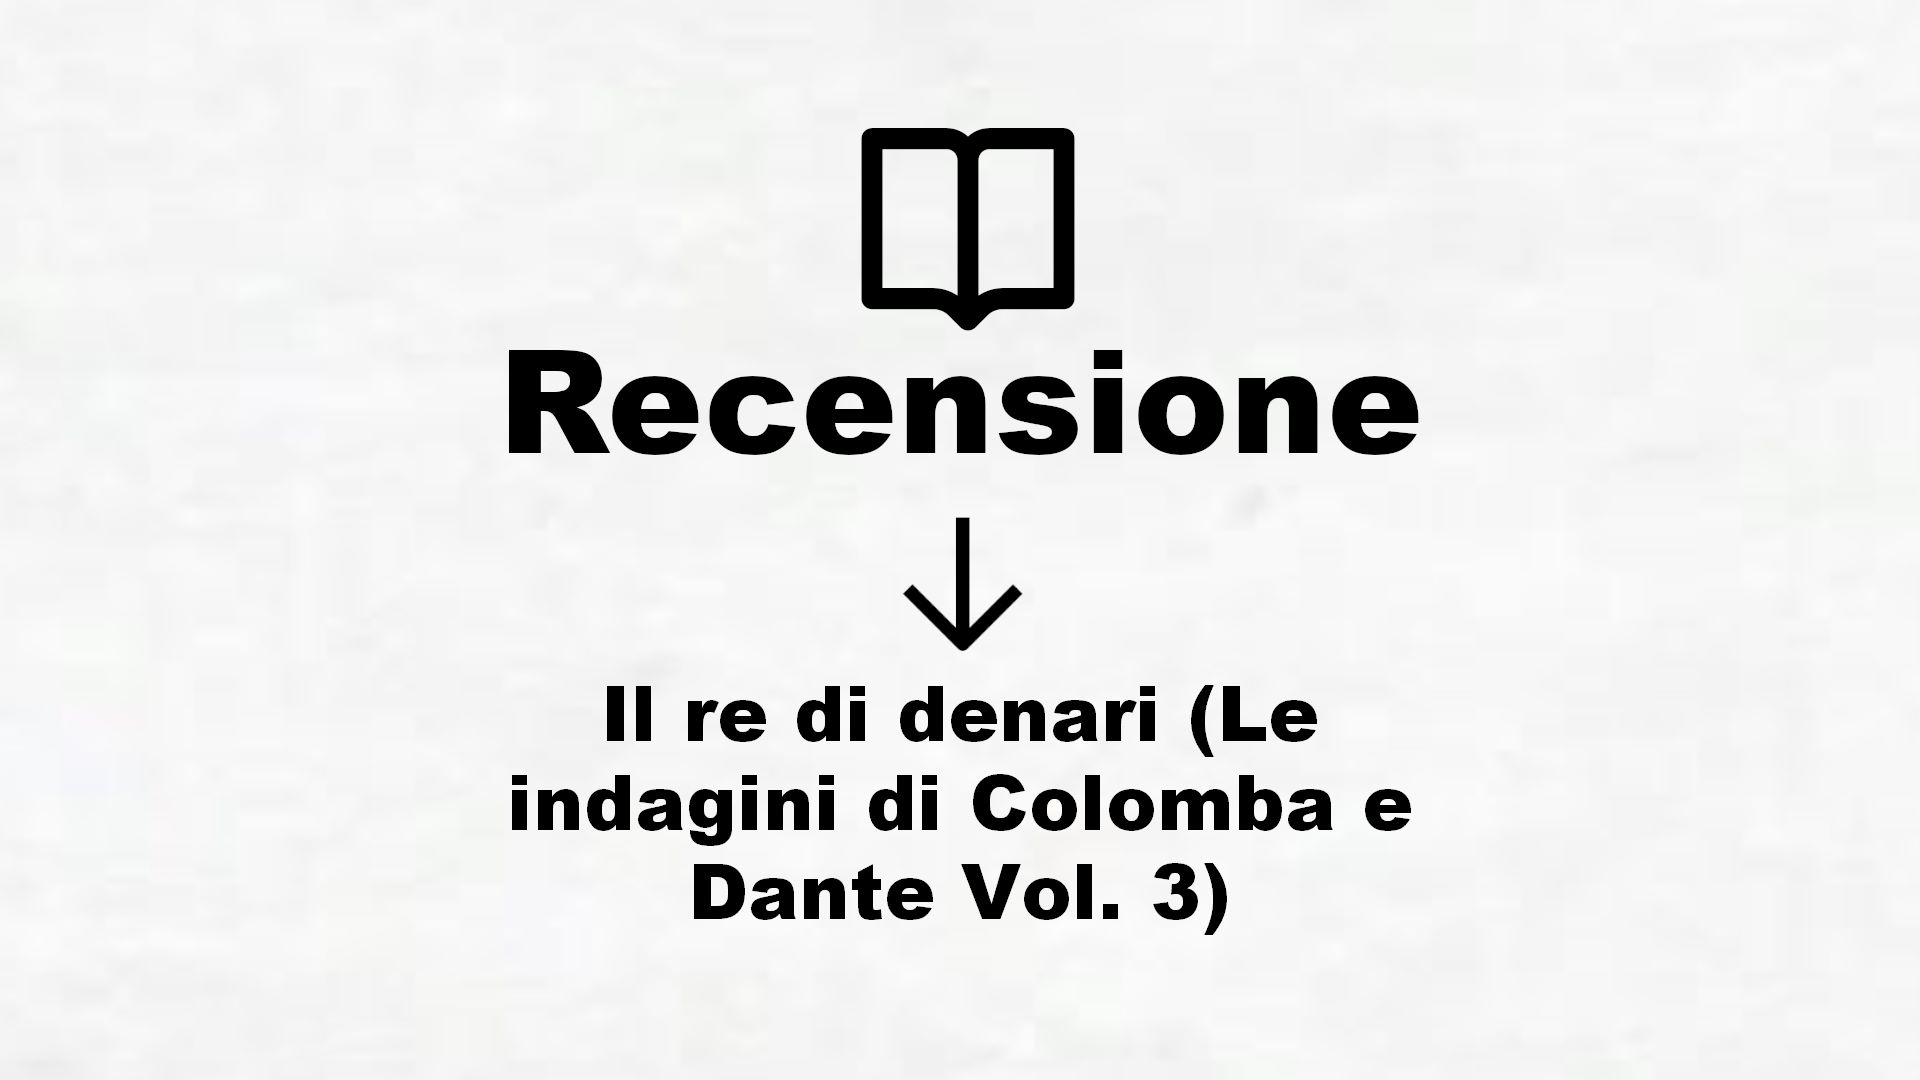 Il re di denari (Le indagini di Colomba e Dante Vol. 3) – Recensione Libro